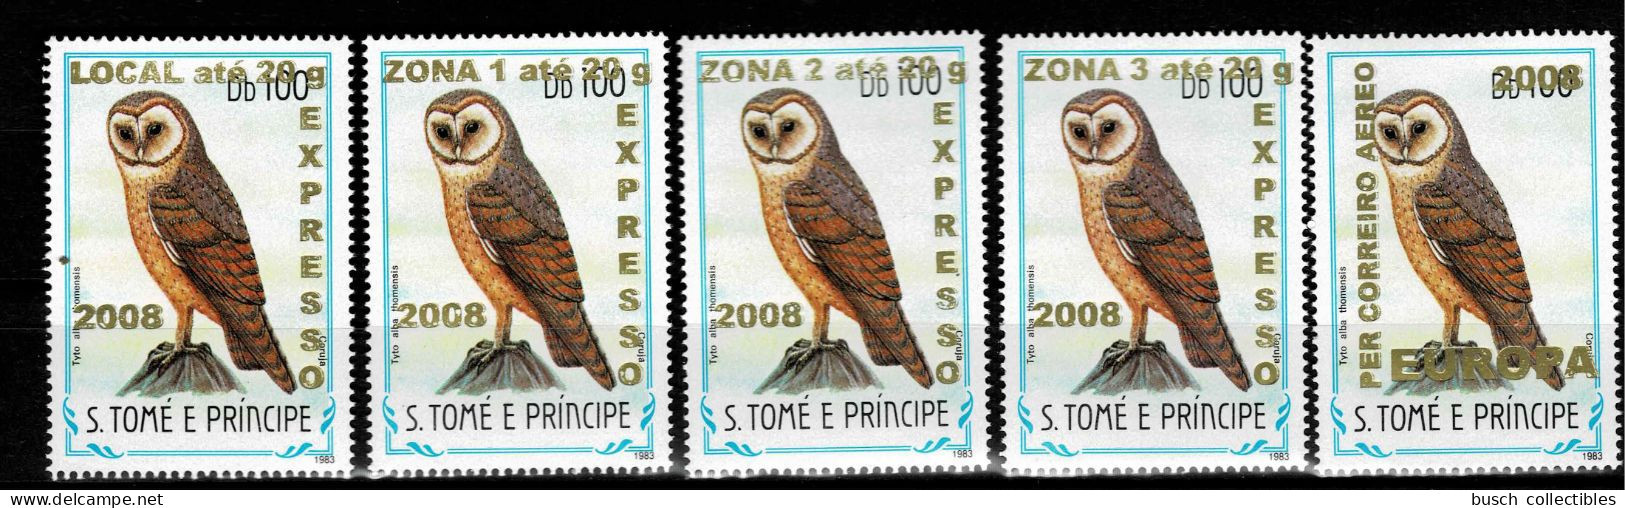 S. Tomé & Principe 2009 Mi. 3963 - 3966 + 3968 Oiseaux Birds Vögel Chouette Eule Owl Faune Fauna Overprint Surcharge 5v. - Sao Tome Et Principe